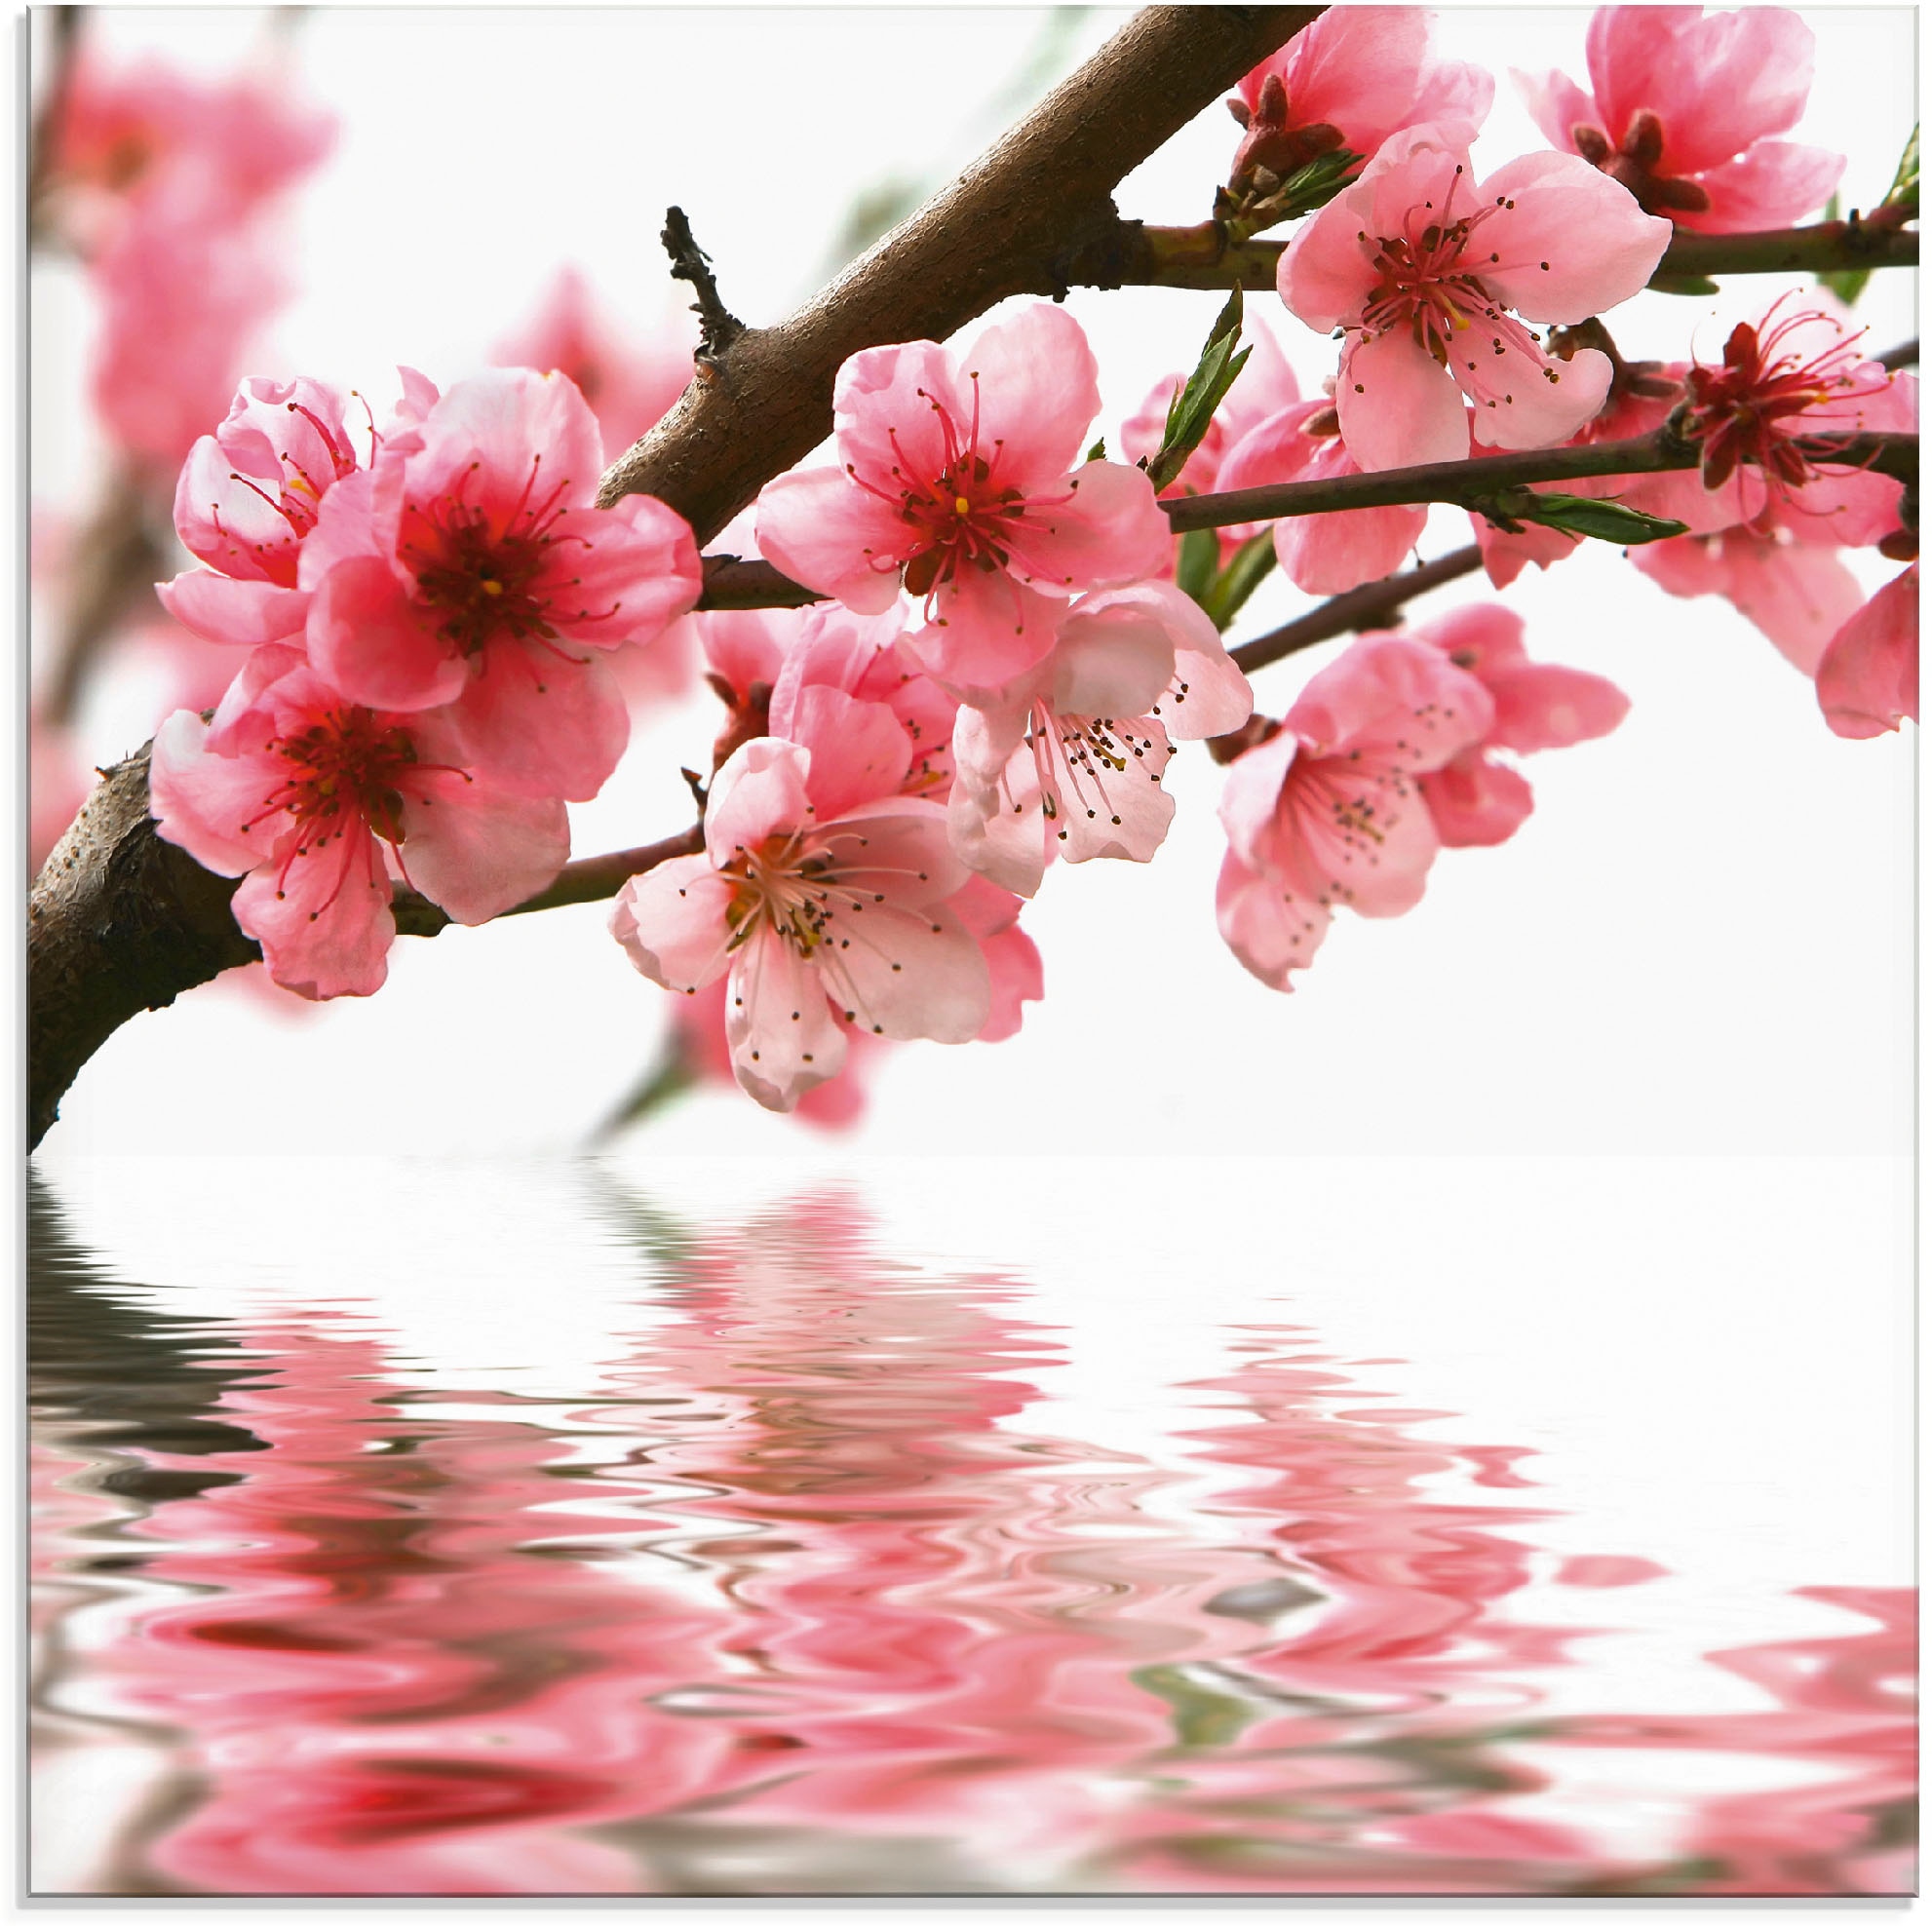 Artland Glasbild »Pfirsichblüten reflektieren im Wasser«, Blumen, (1 St.), in verschiedenen Größen